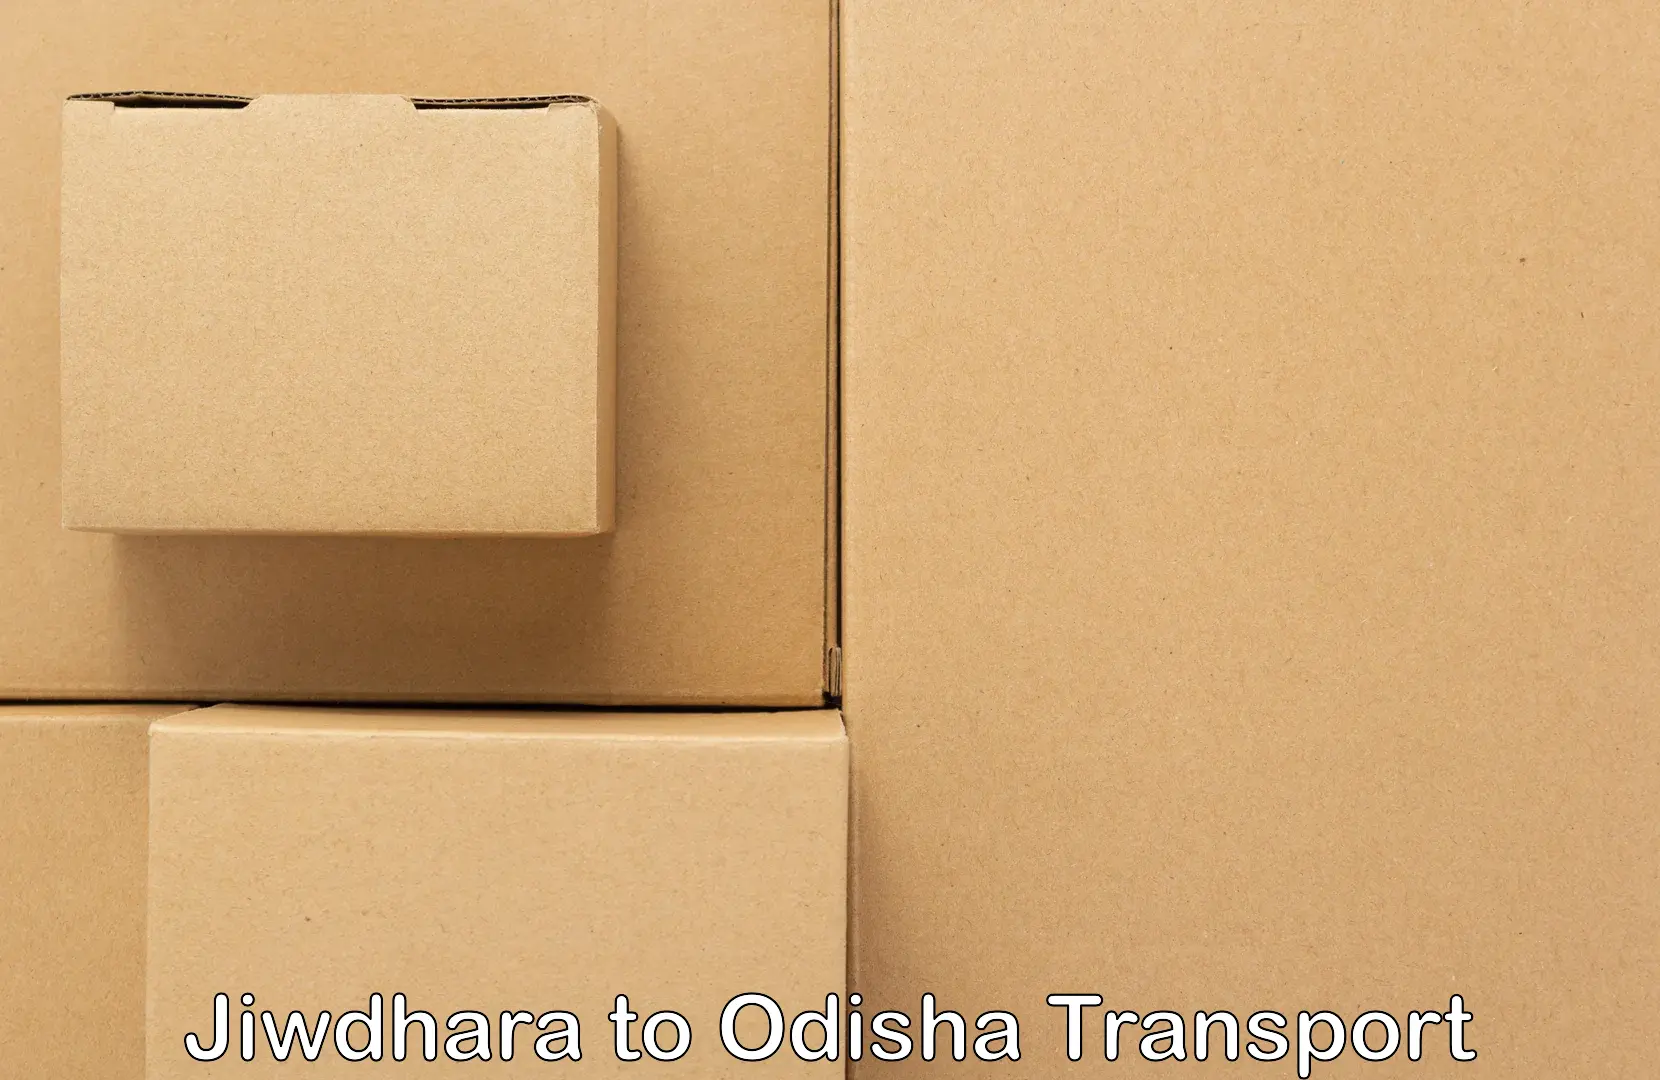 Transportation services Jiwdhara to Mathili